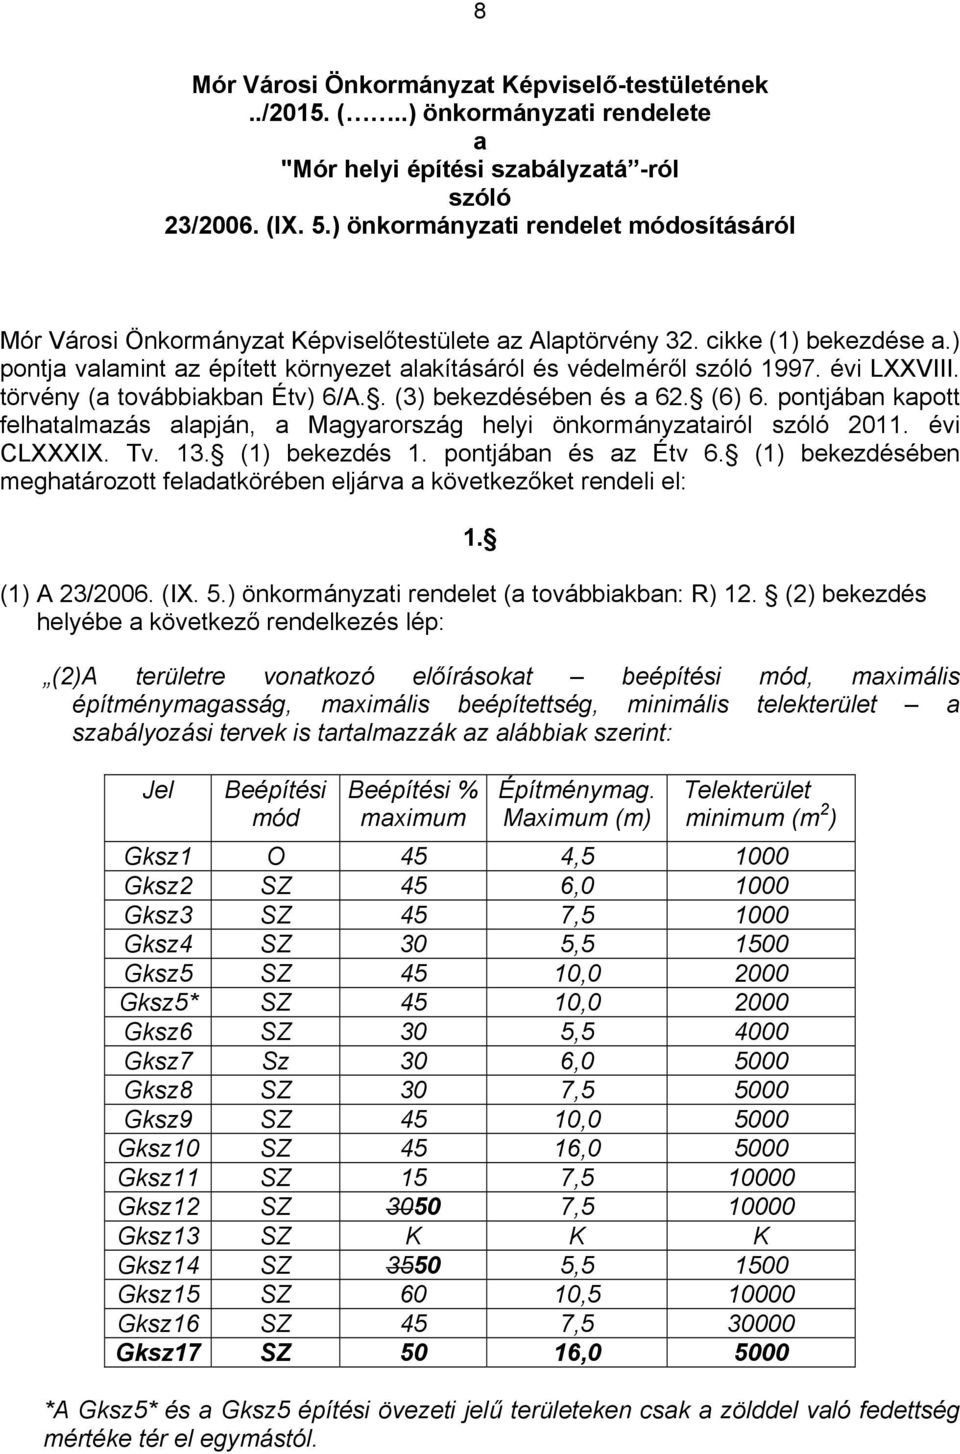 örvény (a ováiakan Év) 6/A.. (3) ekezdéséen és a 62. (6) 6. ponjáan kapo felhaalmazás alapján, a Magyarország helyi önkormányzaairól szóló 2011. évi CLXXXIX. Tv. 13. (1) ekezdés 1. ponjáan és az Év 6.